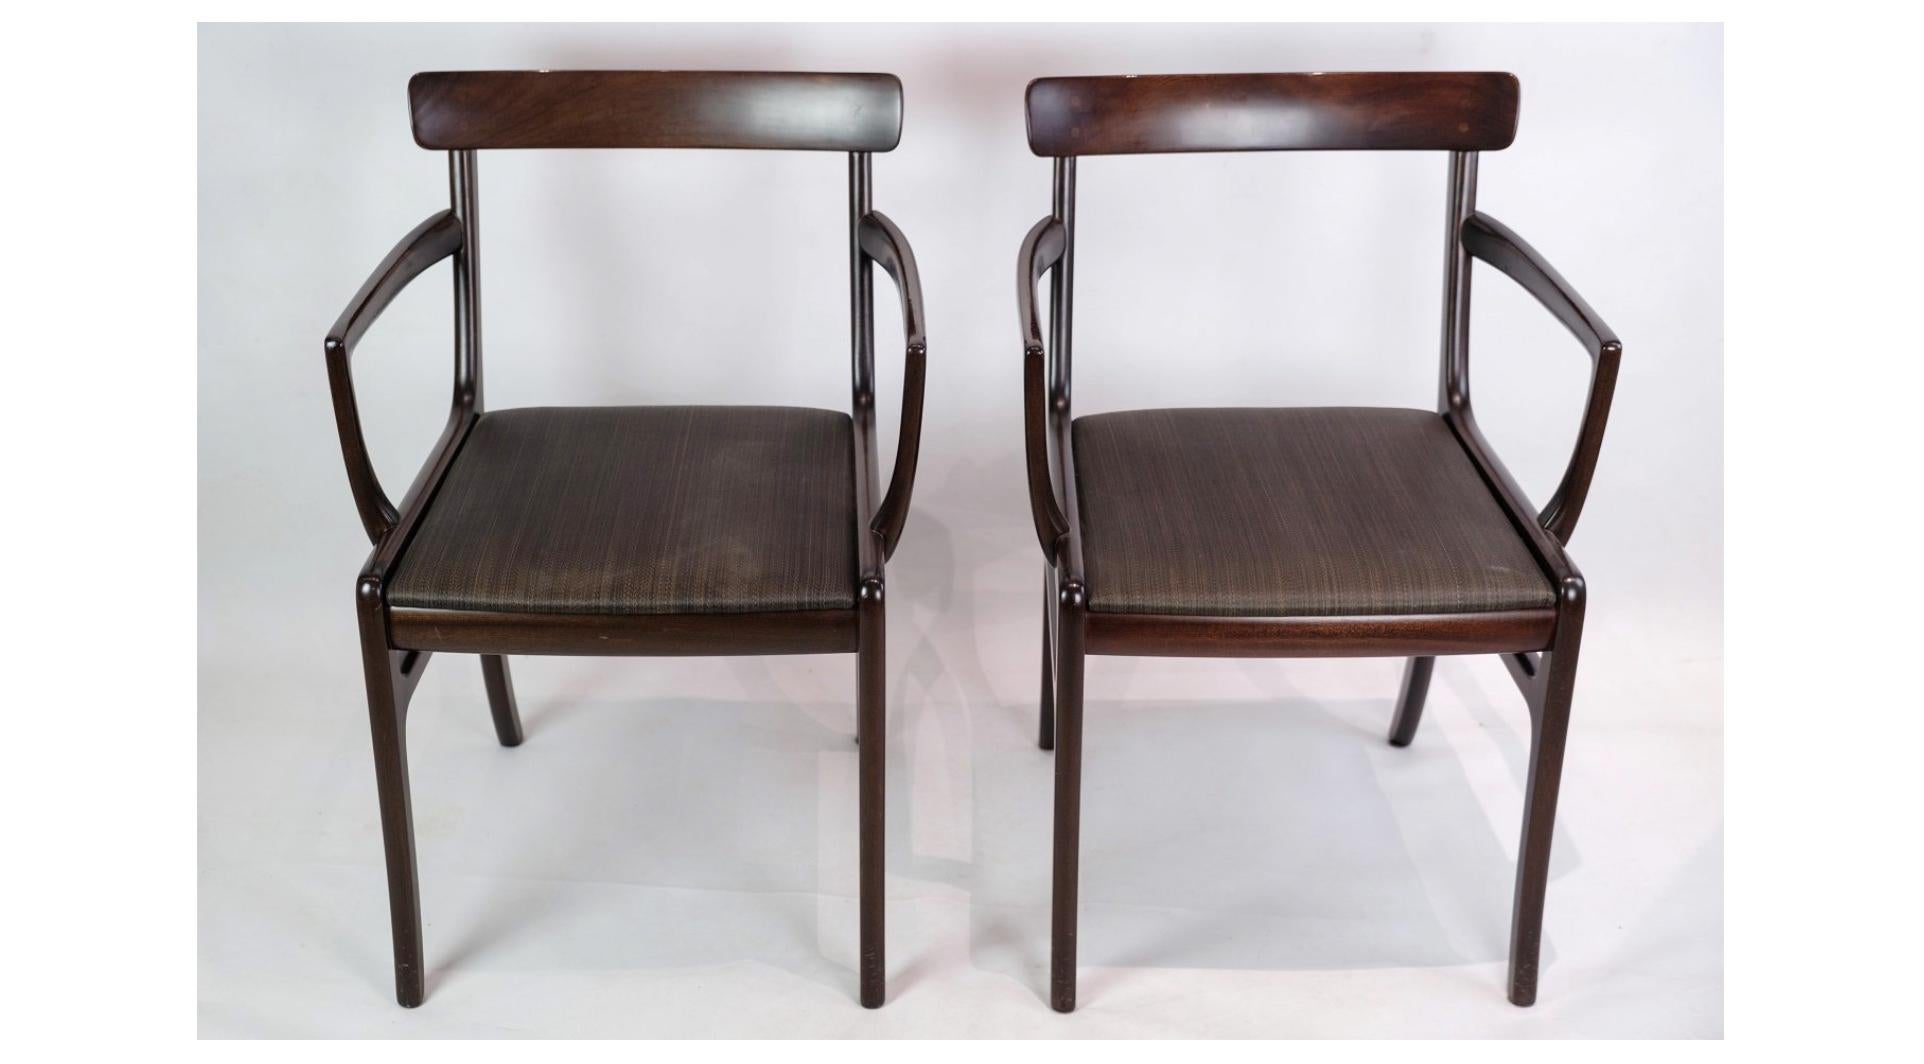 Une paire de fauteuils Brilliante, en acajou et recouverts de cuir noir, est un brillant exemple du design intemporel d'Ole Wanscher, combinant esthétique et fonctionnalité de manière sublime.

Ole Wanscher, l'un des plus importants designers de